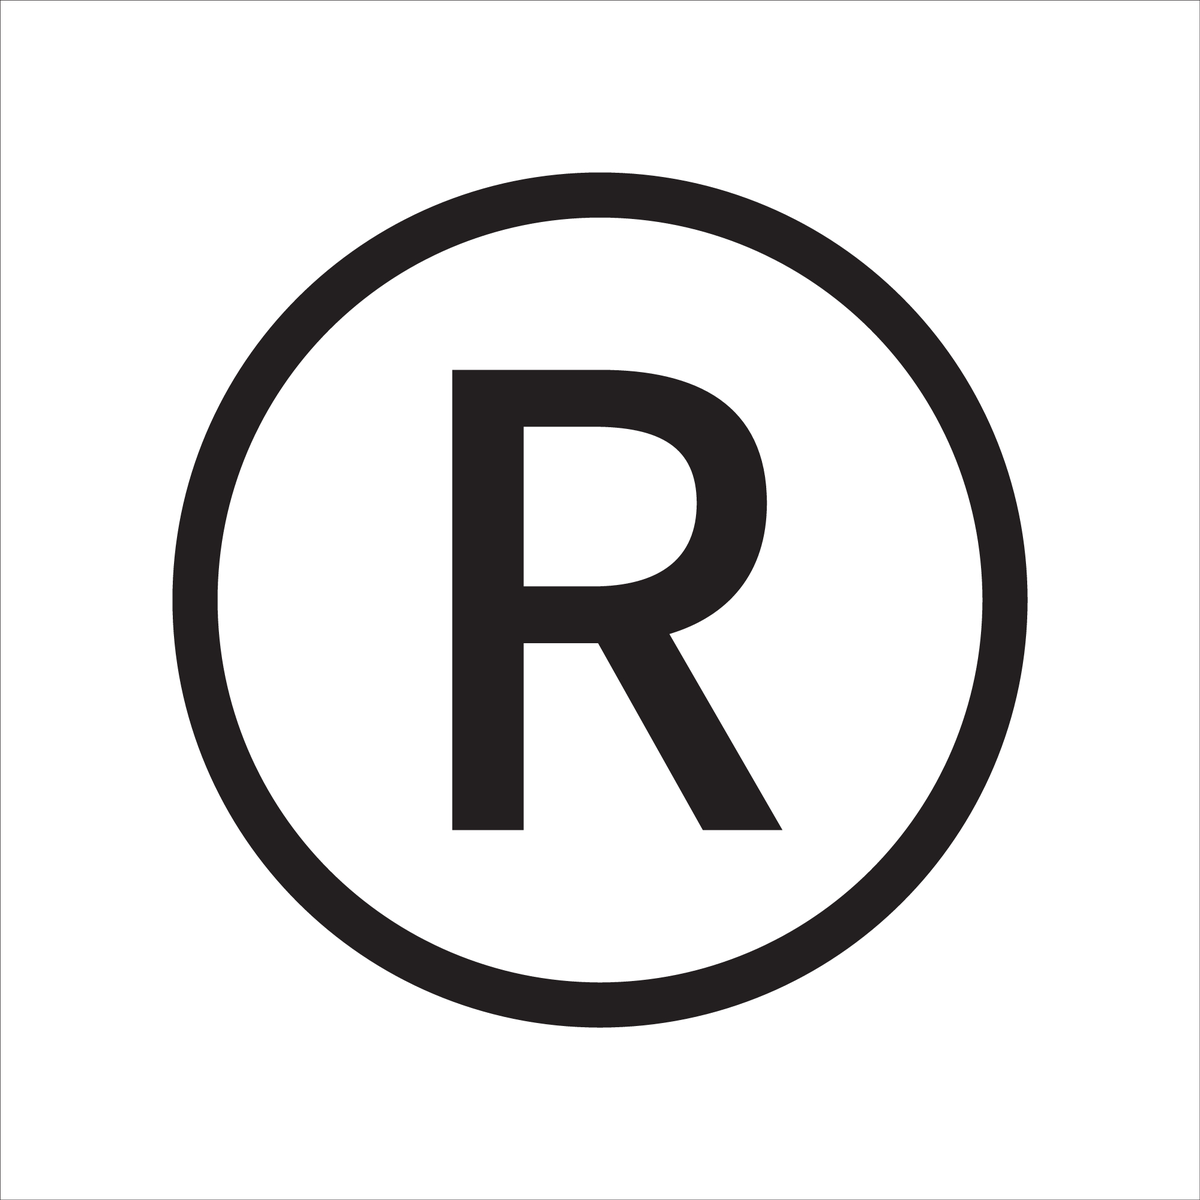 R quality. Зарегистрированный товарный знак. Буква r в кружочке. Значок r. Знак r в кружке на товарной марке.